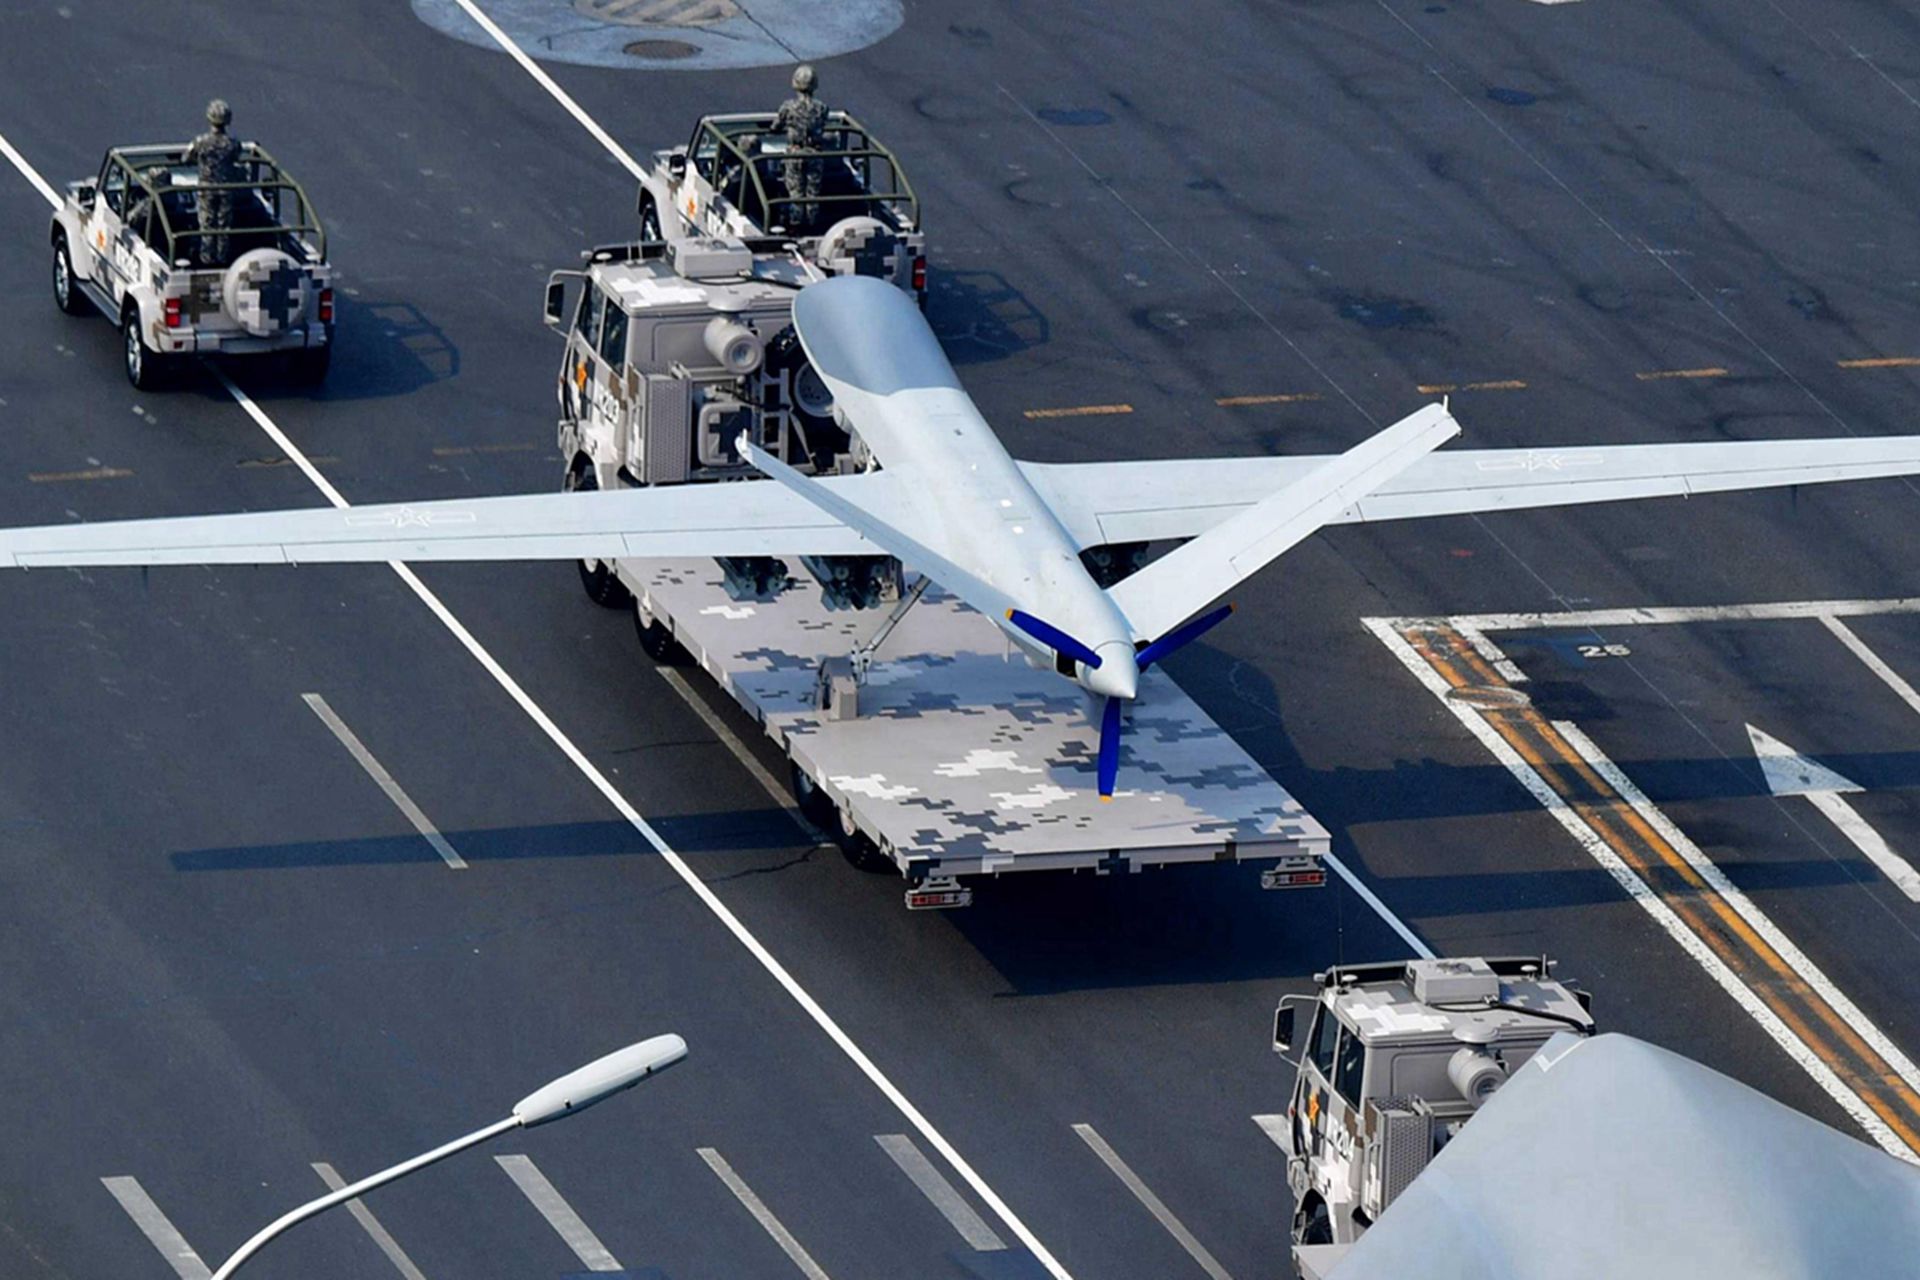 中国研制多型无人机。图为“攻击-2”无人机，长11米，翼展20.5米，最大速度370公里每小时，最大升限9,000米，有效载荷480公斤，机翼有6个挂点。（鼎盛军事）